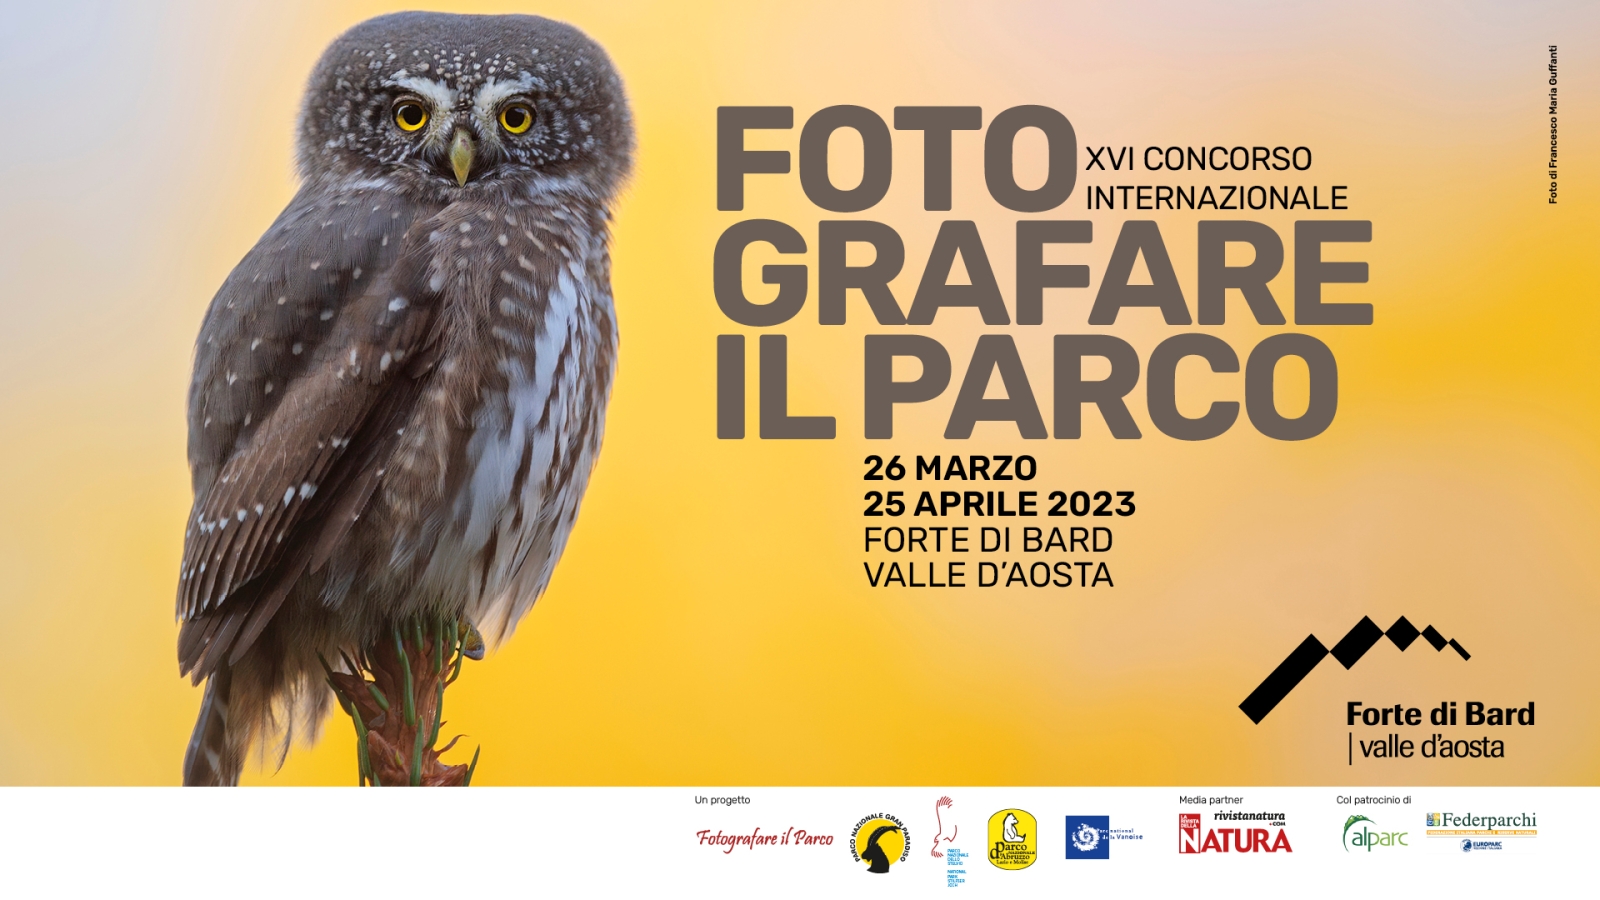 International photo contest “Fotografare Il Parco” - 15th edition